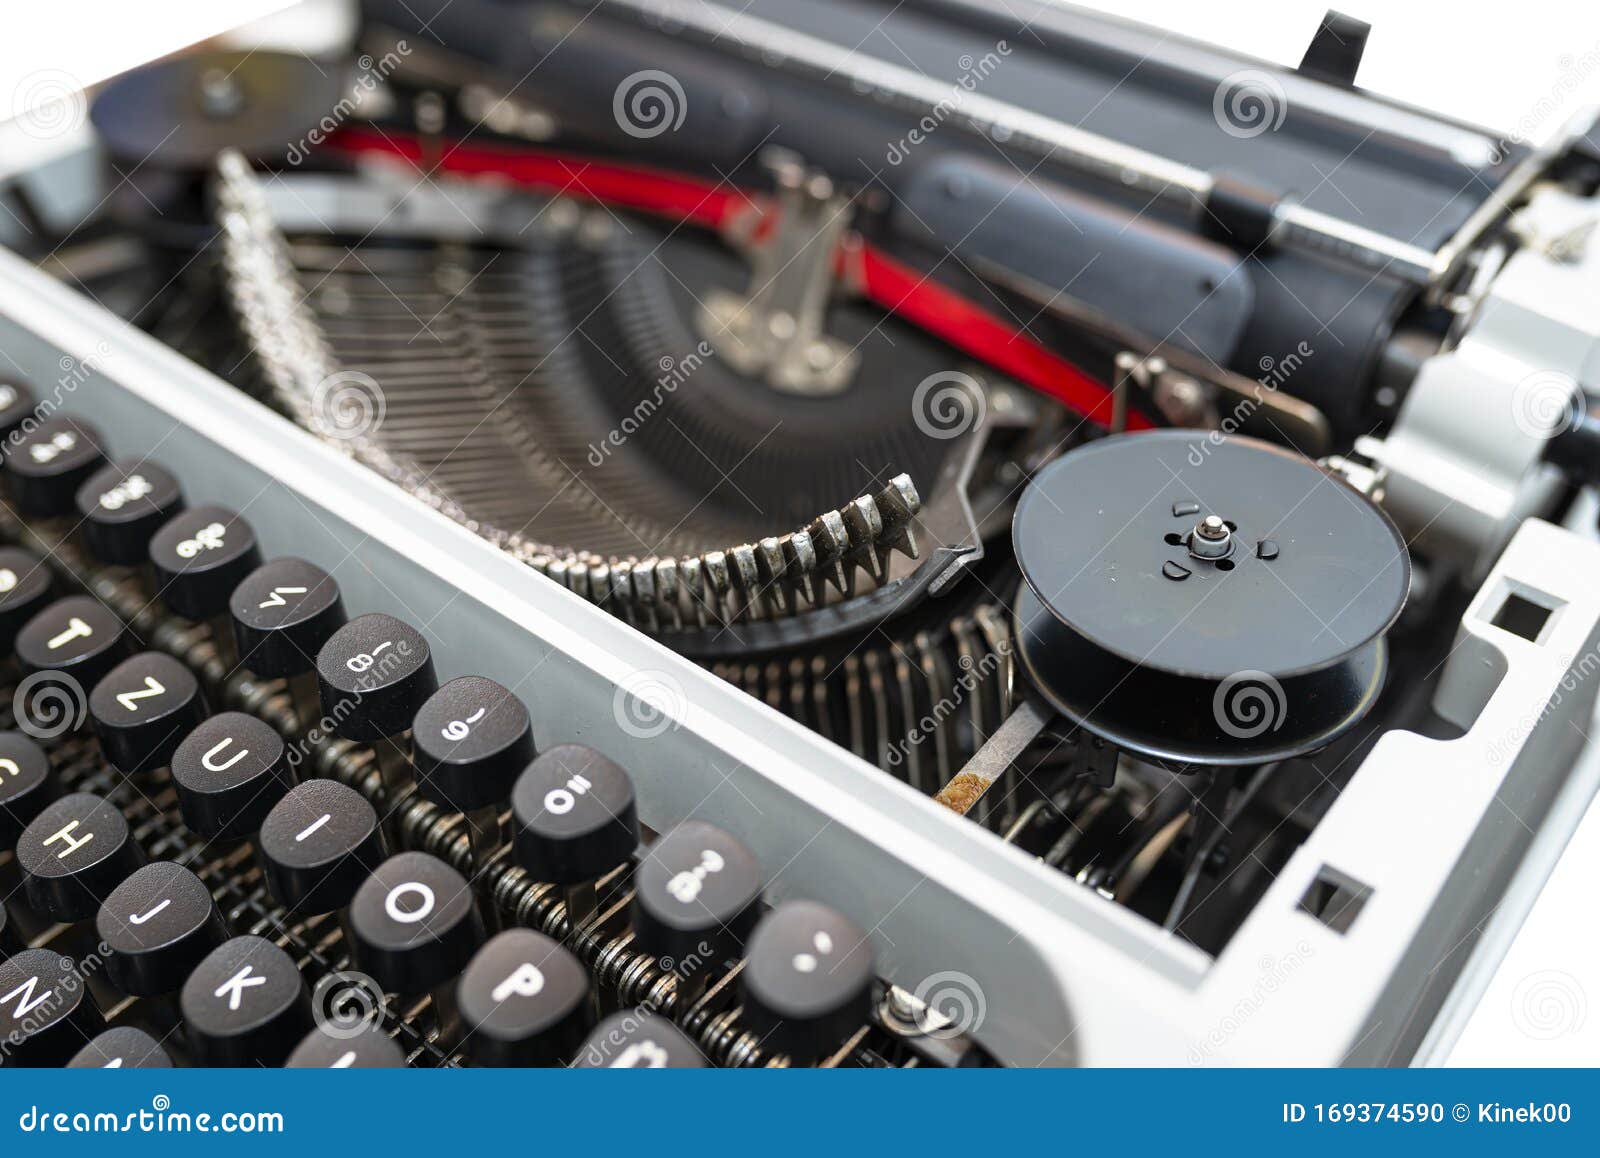 old typewriter keyboard layout